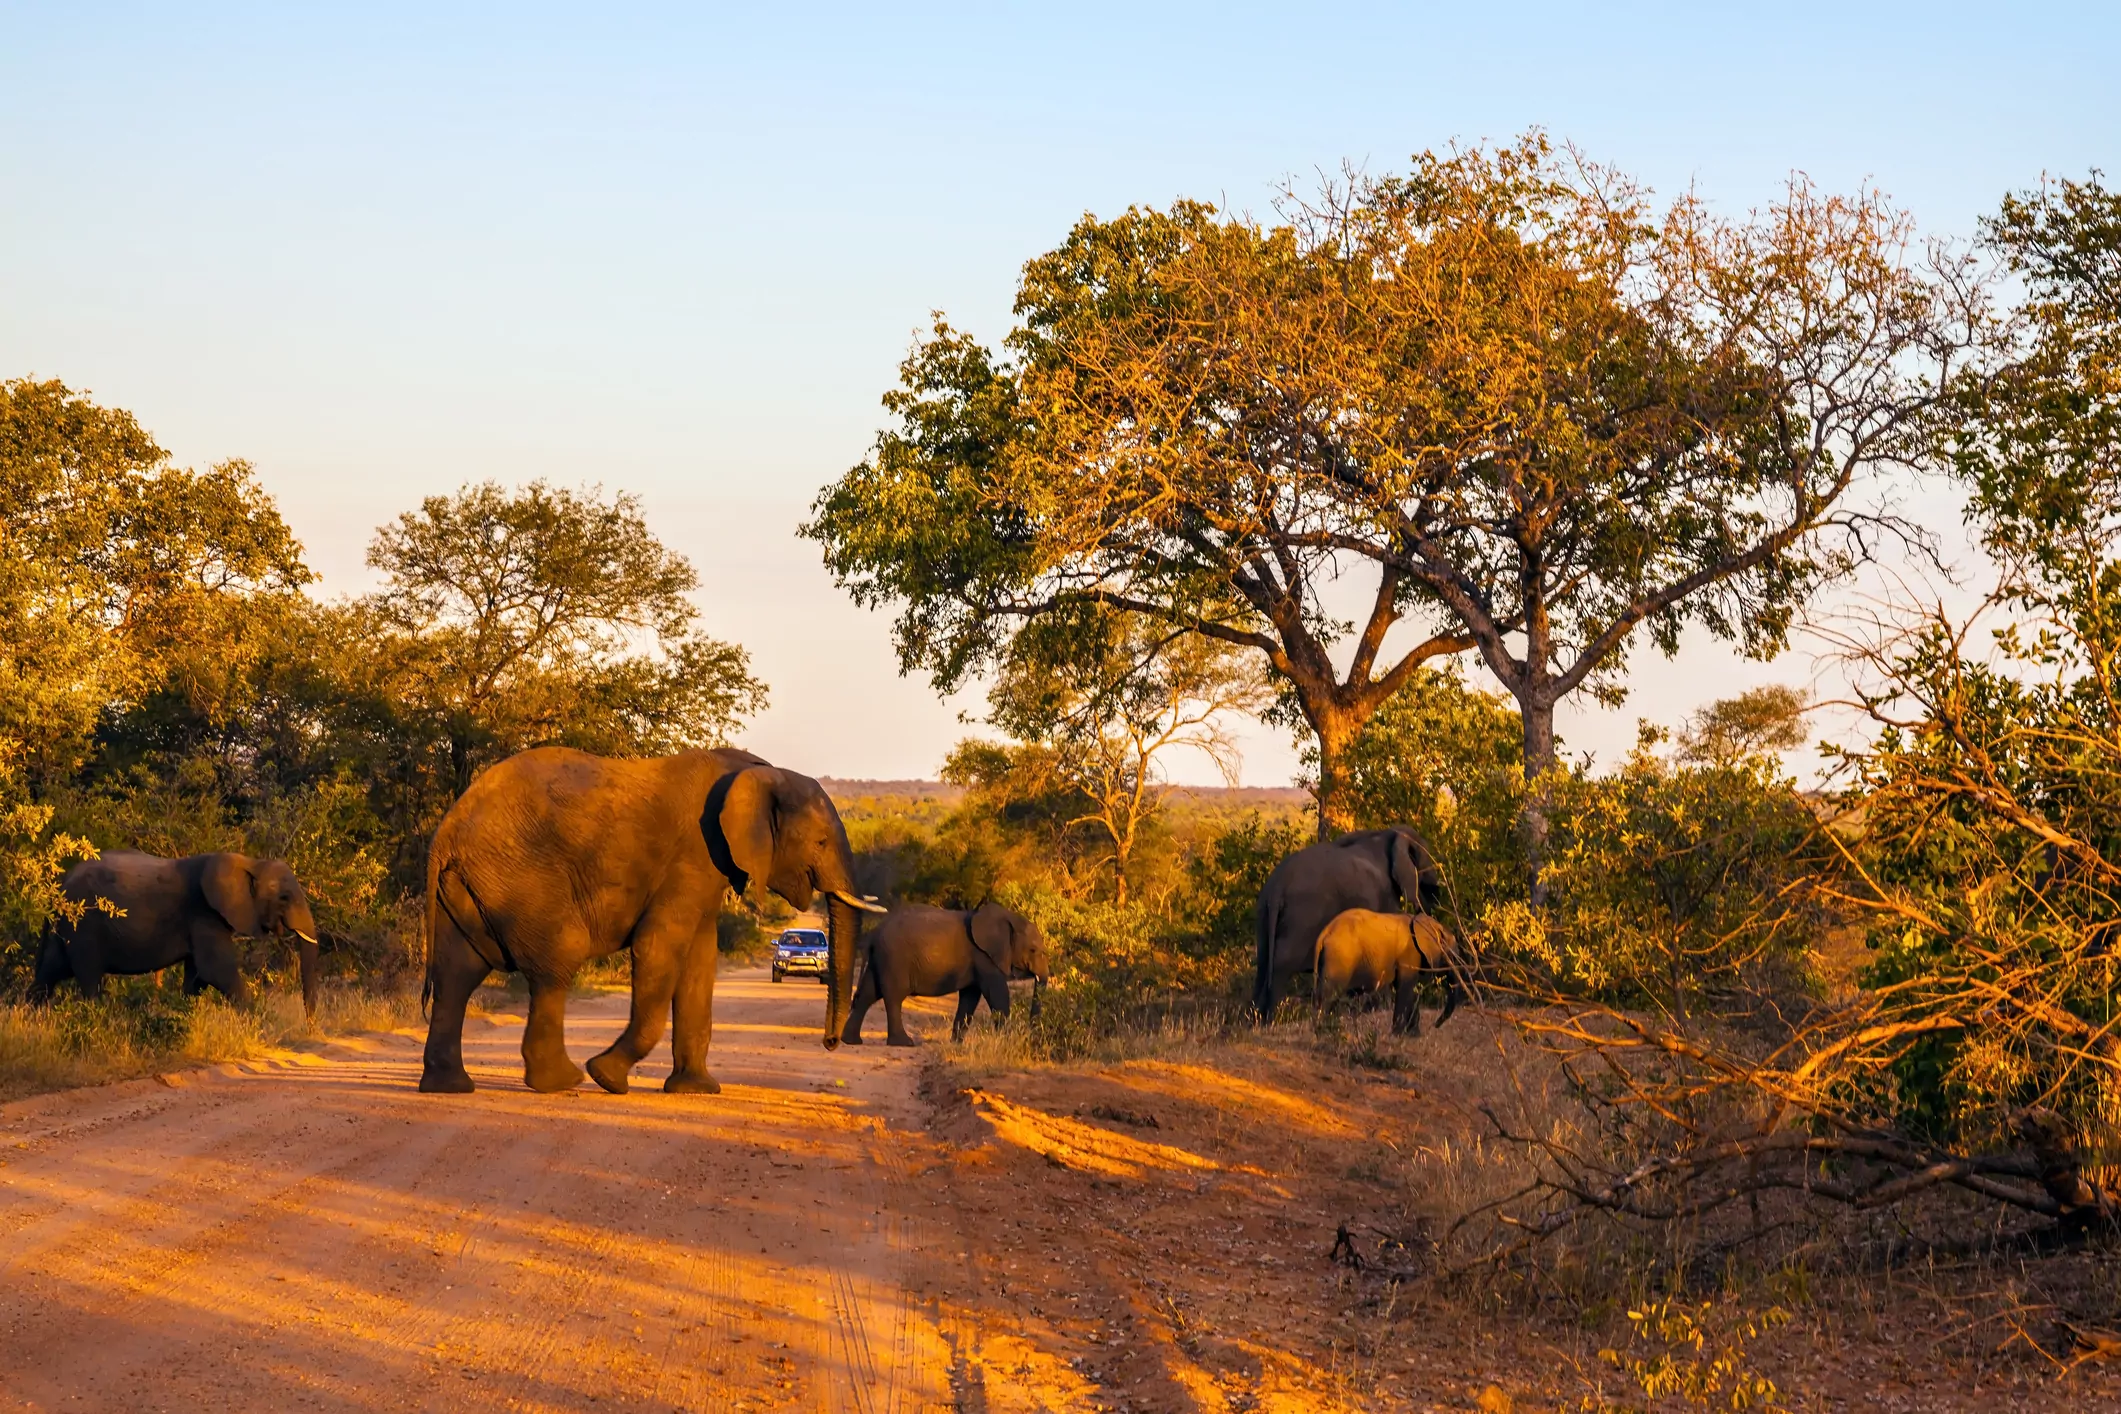  Melhores destinos de viagem: África e sua vida selvagem